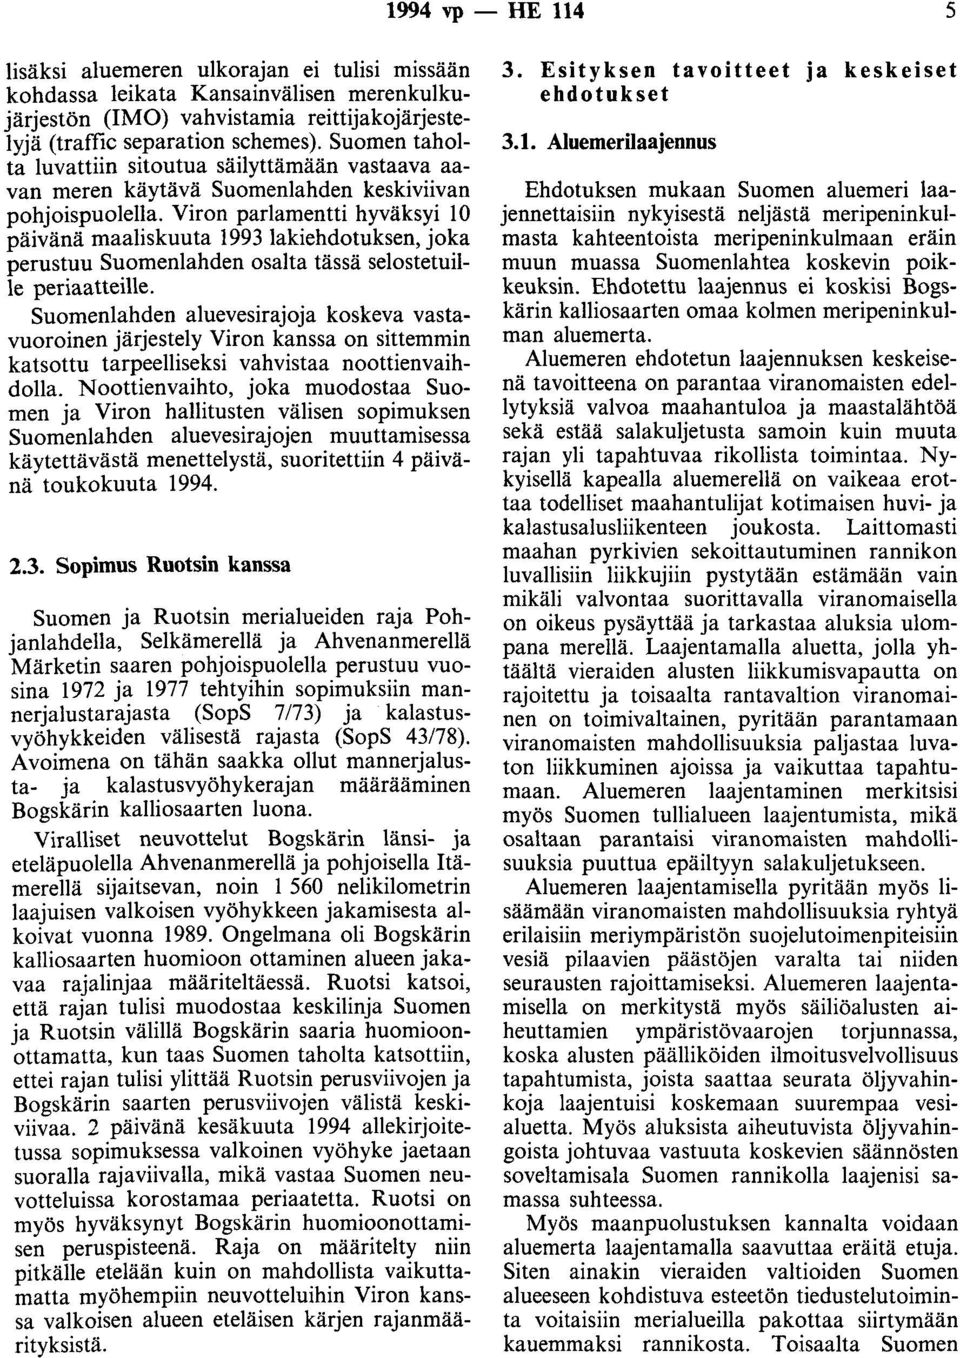 Viron parlamentti hyväksyi 10 päivänä maaliskuuta 1993 lakiehdotuksen, joka perustuu Suomenlahden osalta tässä selostetuille periaatteille.